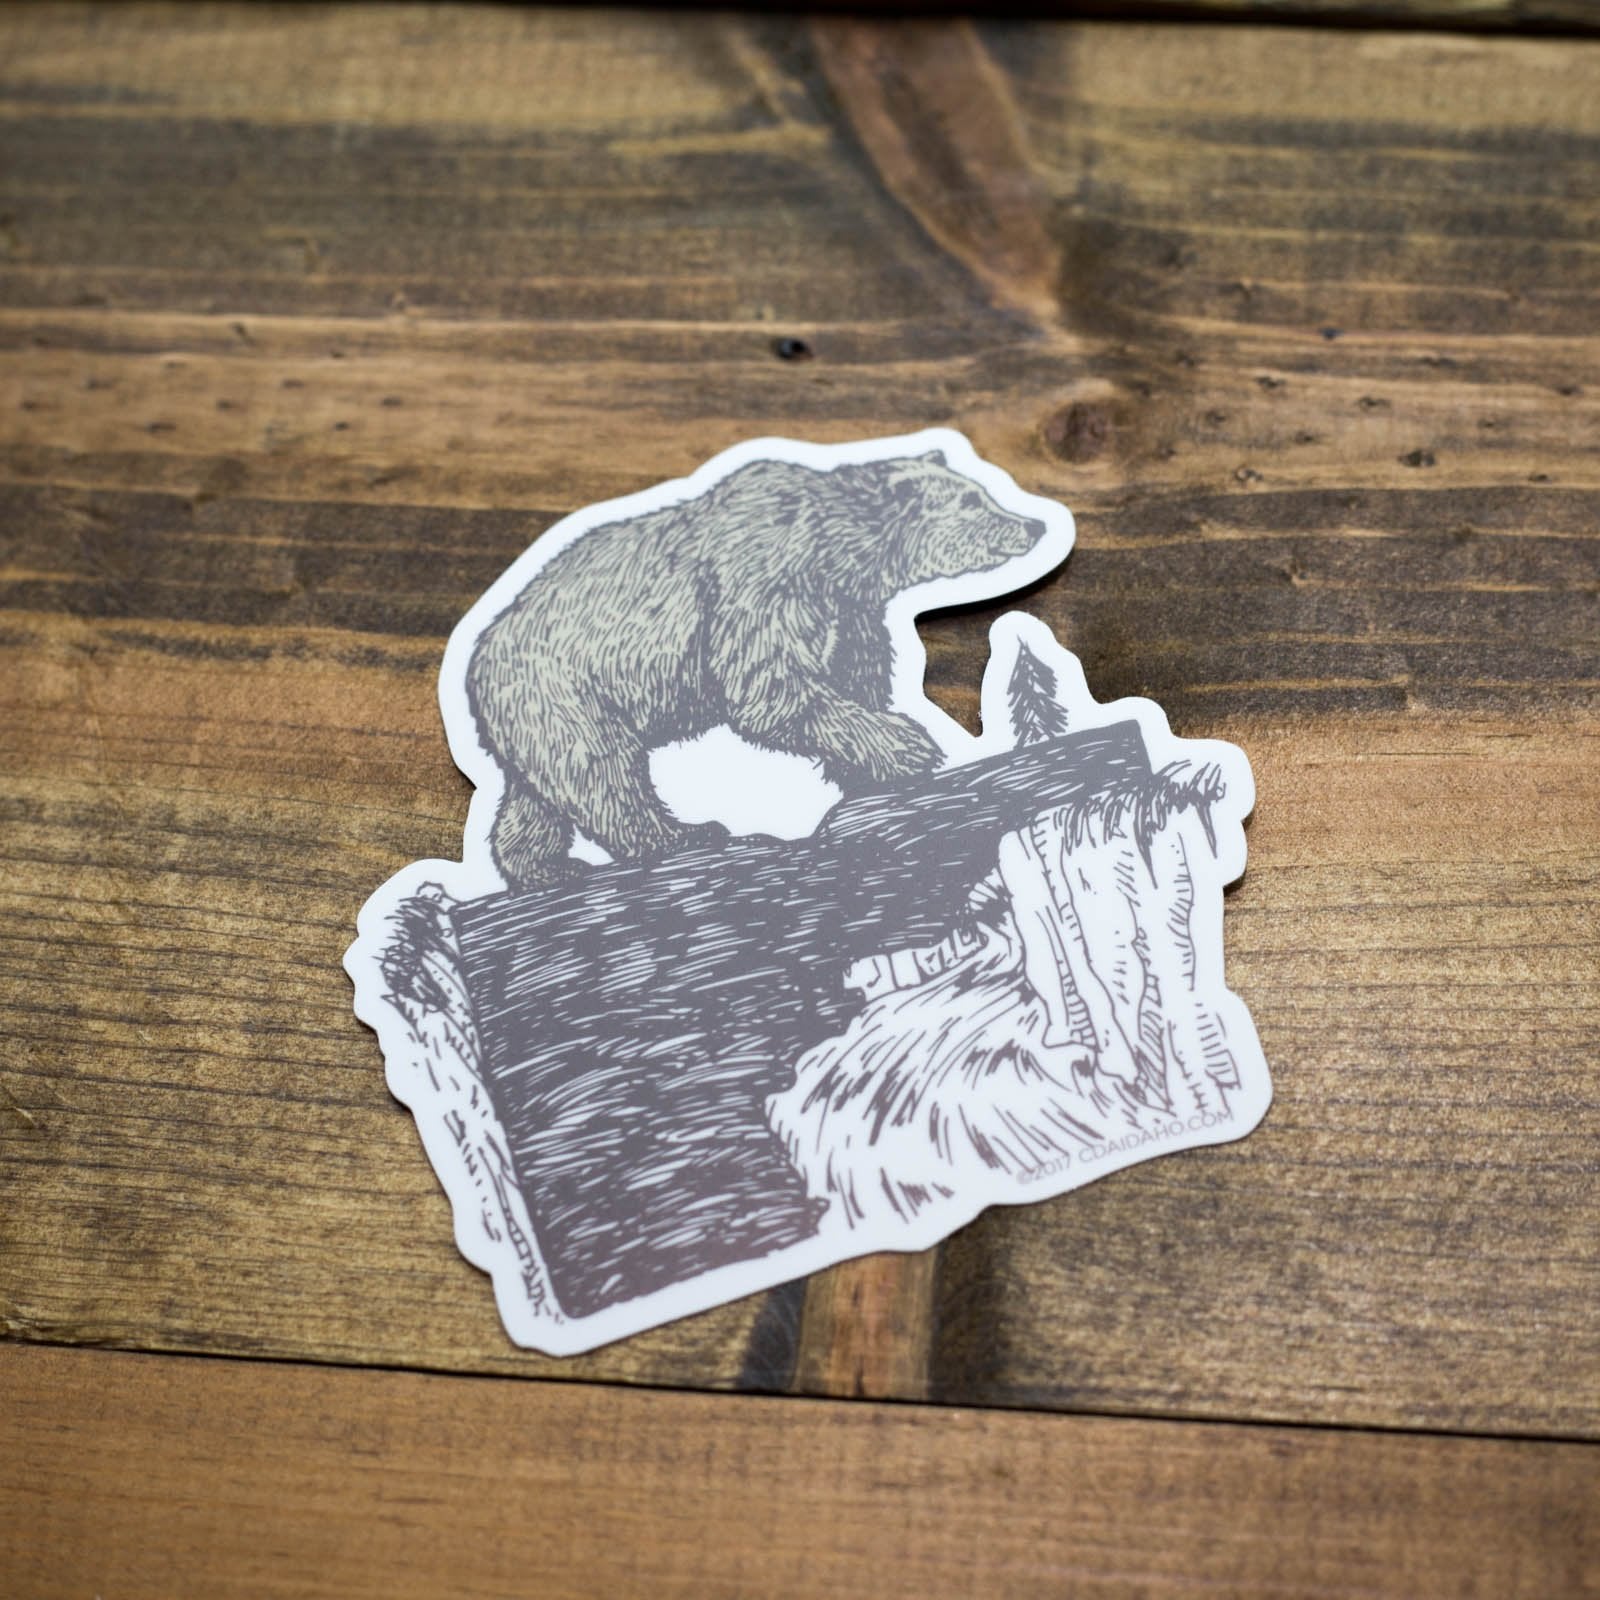 Bear Crossing Sticker